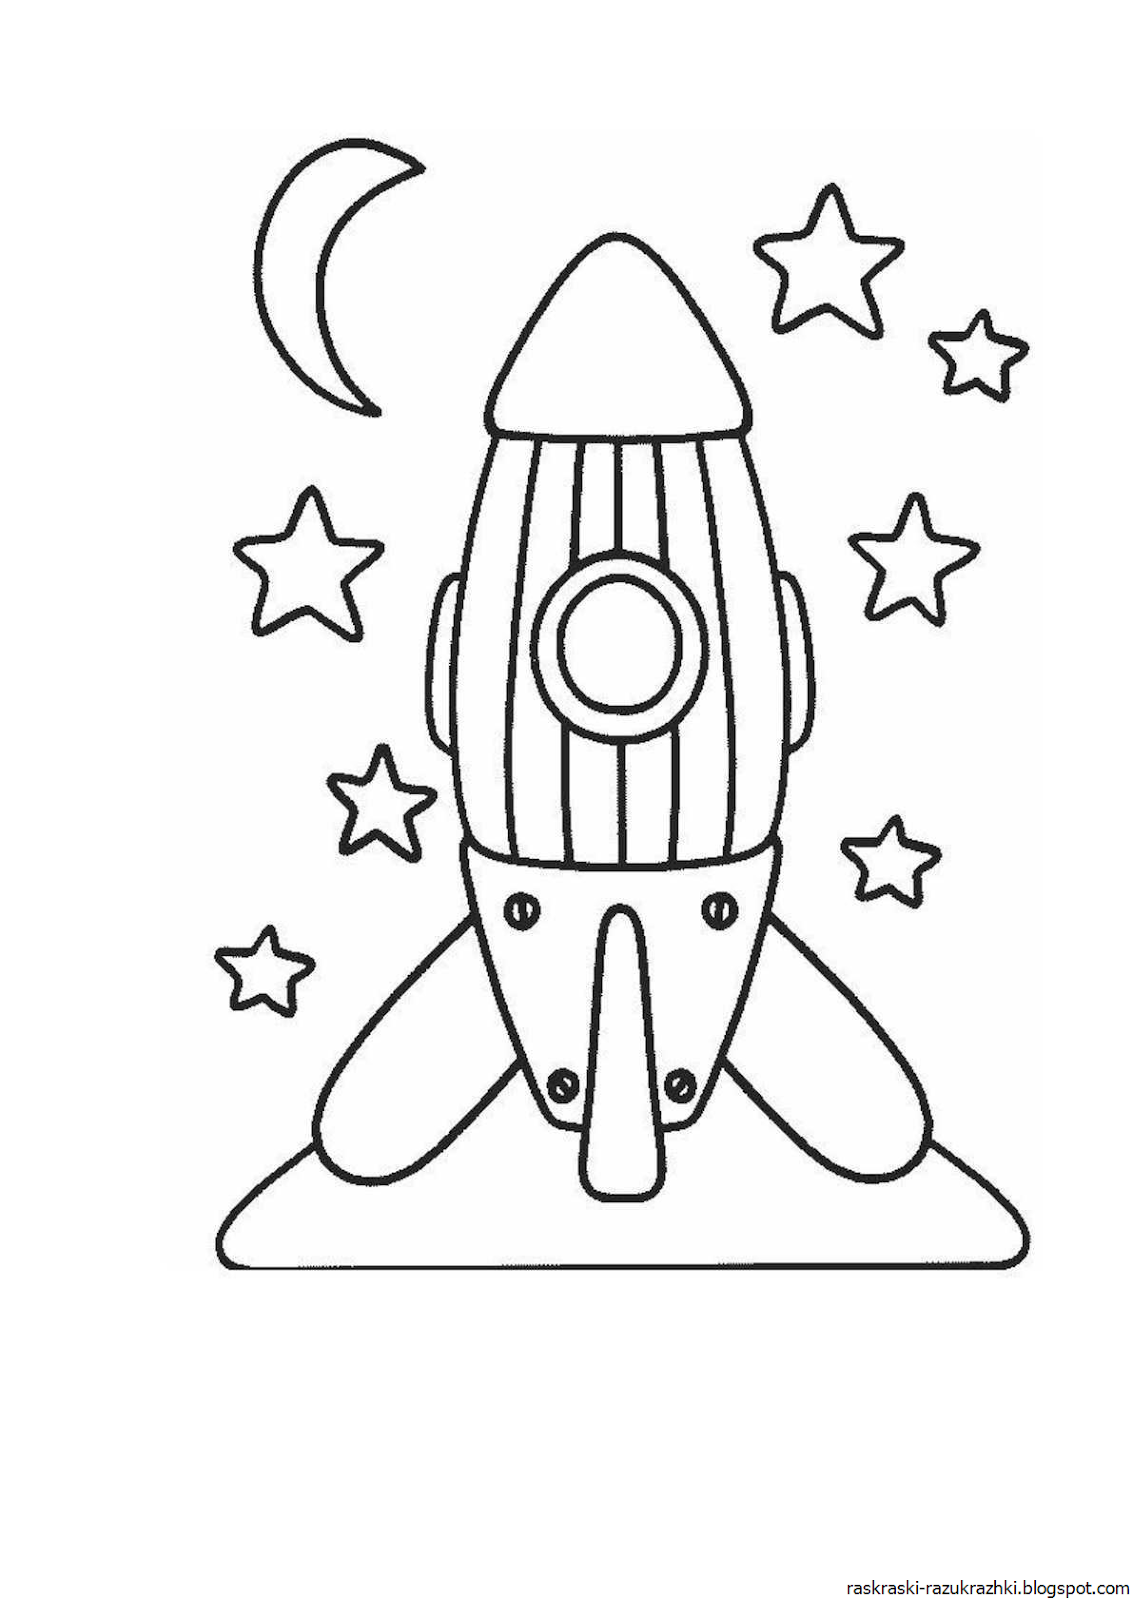 Раскраска космос для детей 3 лет. Ракета раскраска. Ракета раскраска для детей. Космическая ракета раскраска для детей. Раскраски на тему космос.